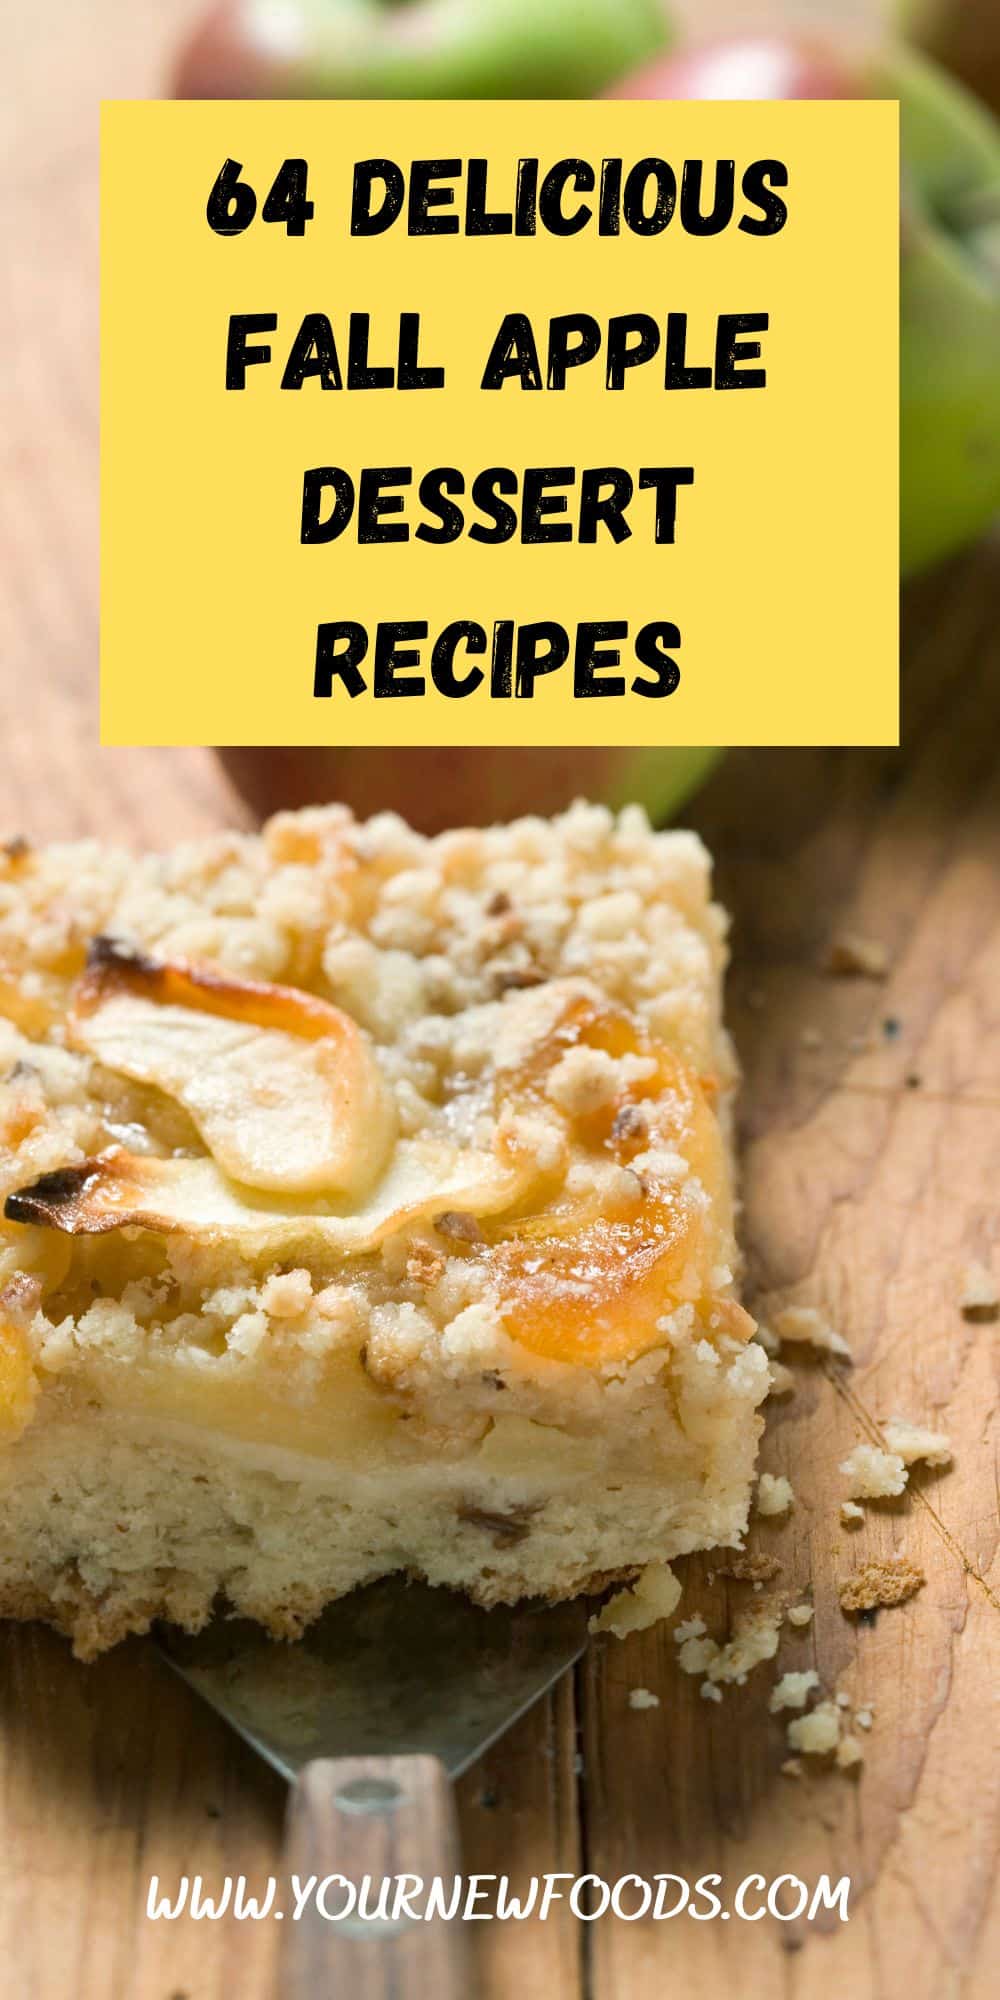 Delicious Fall Apple dessert 64 recipes